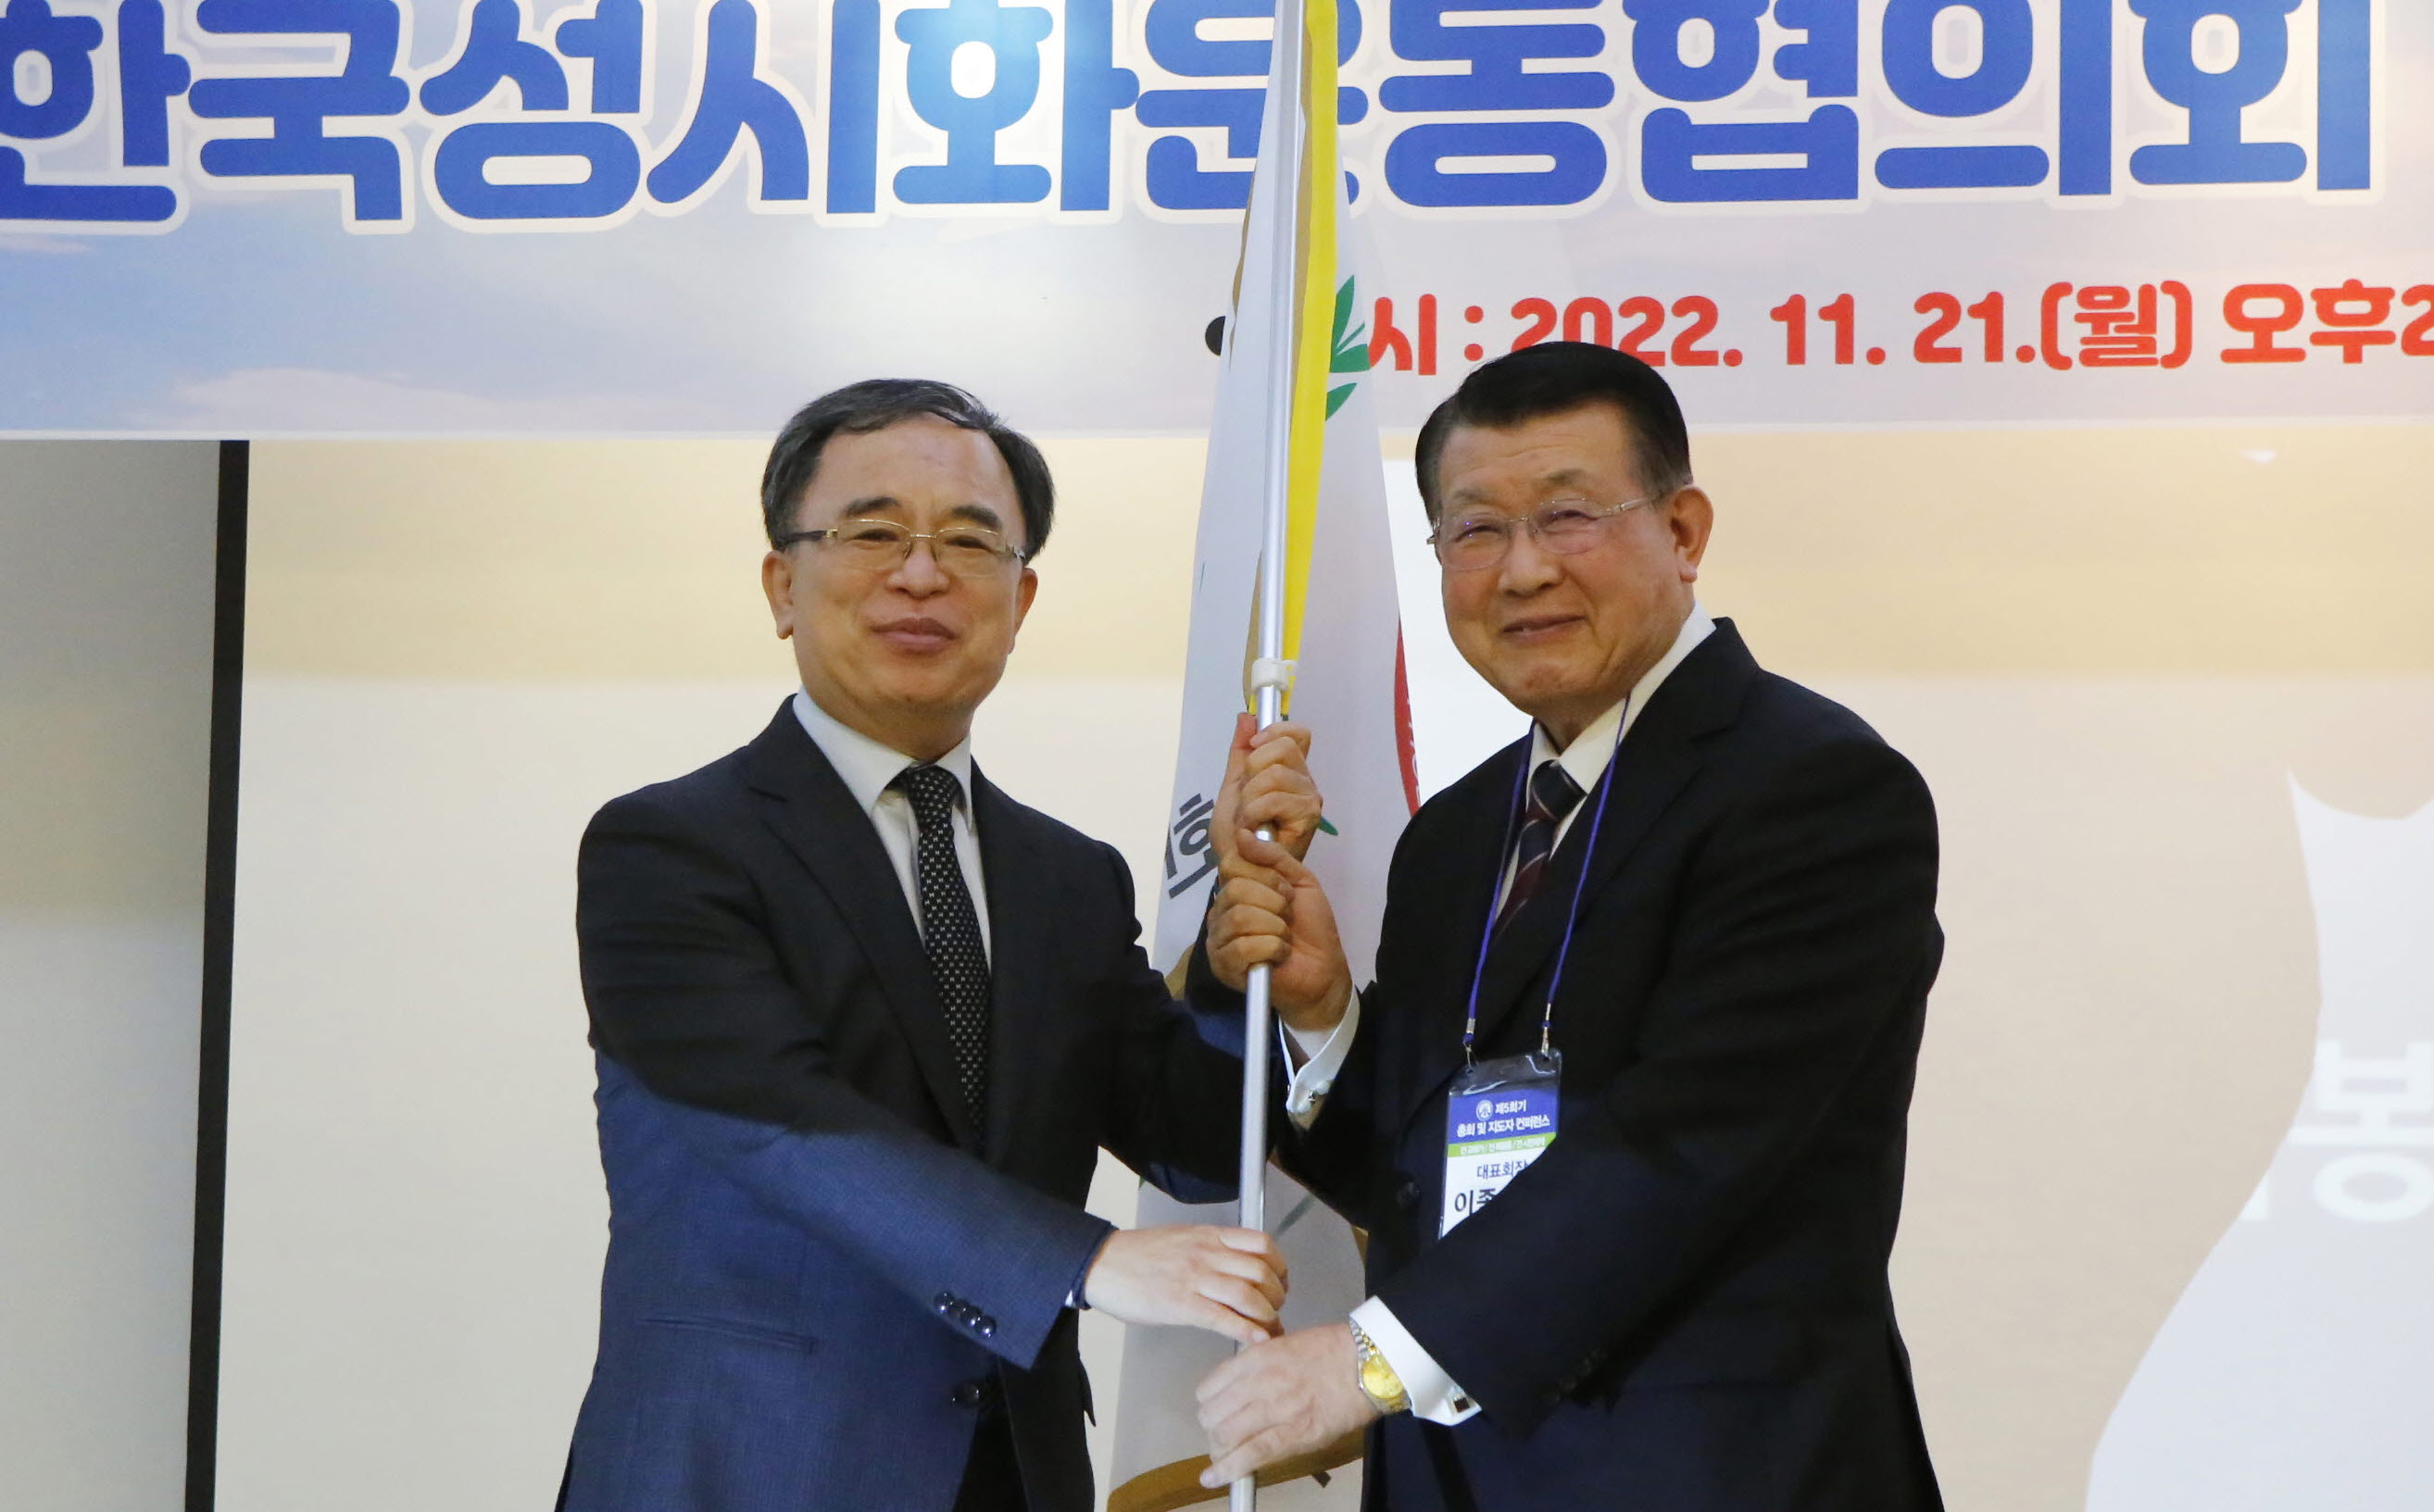 김철민 목사, 한국성시화운동협의회 제3대 대표회장 취임